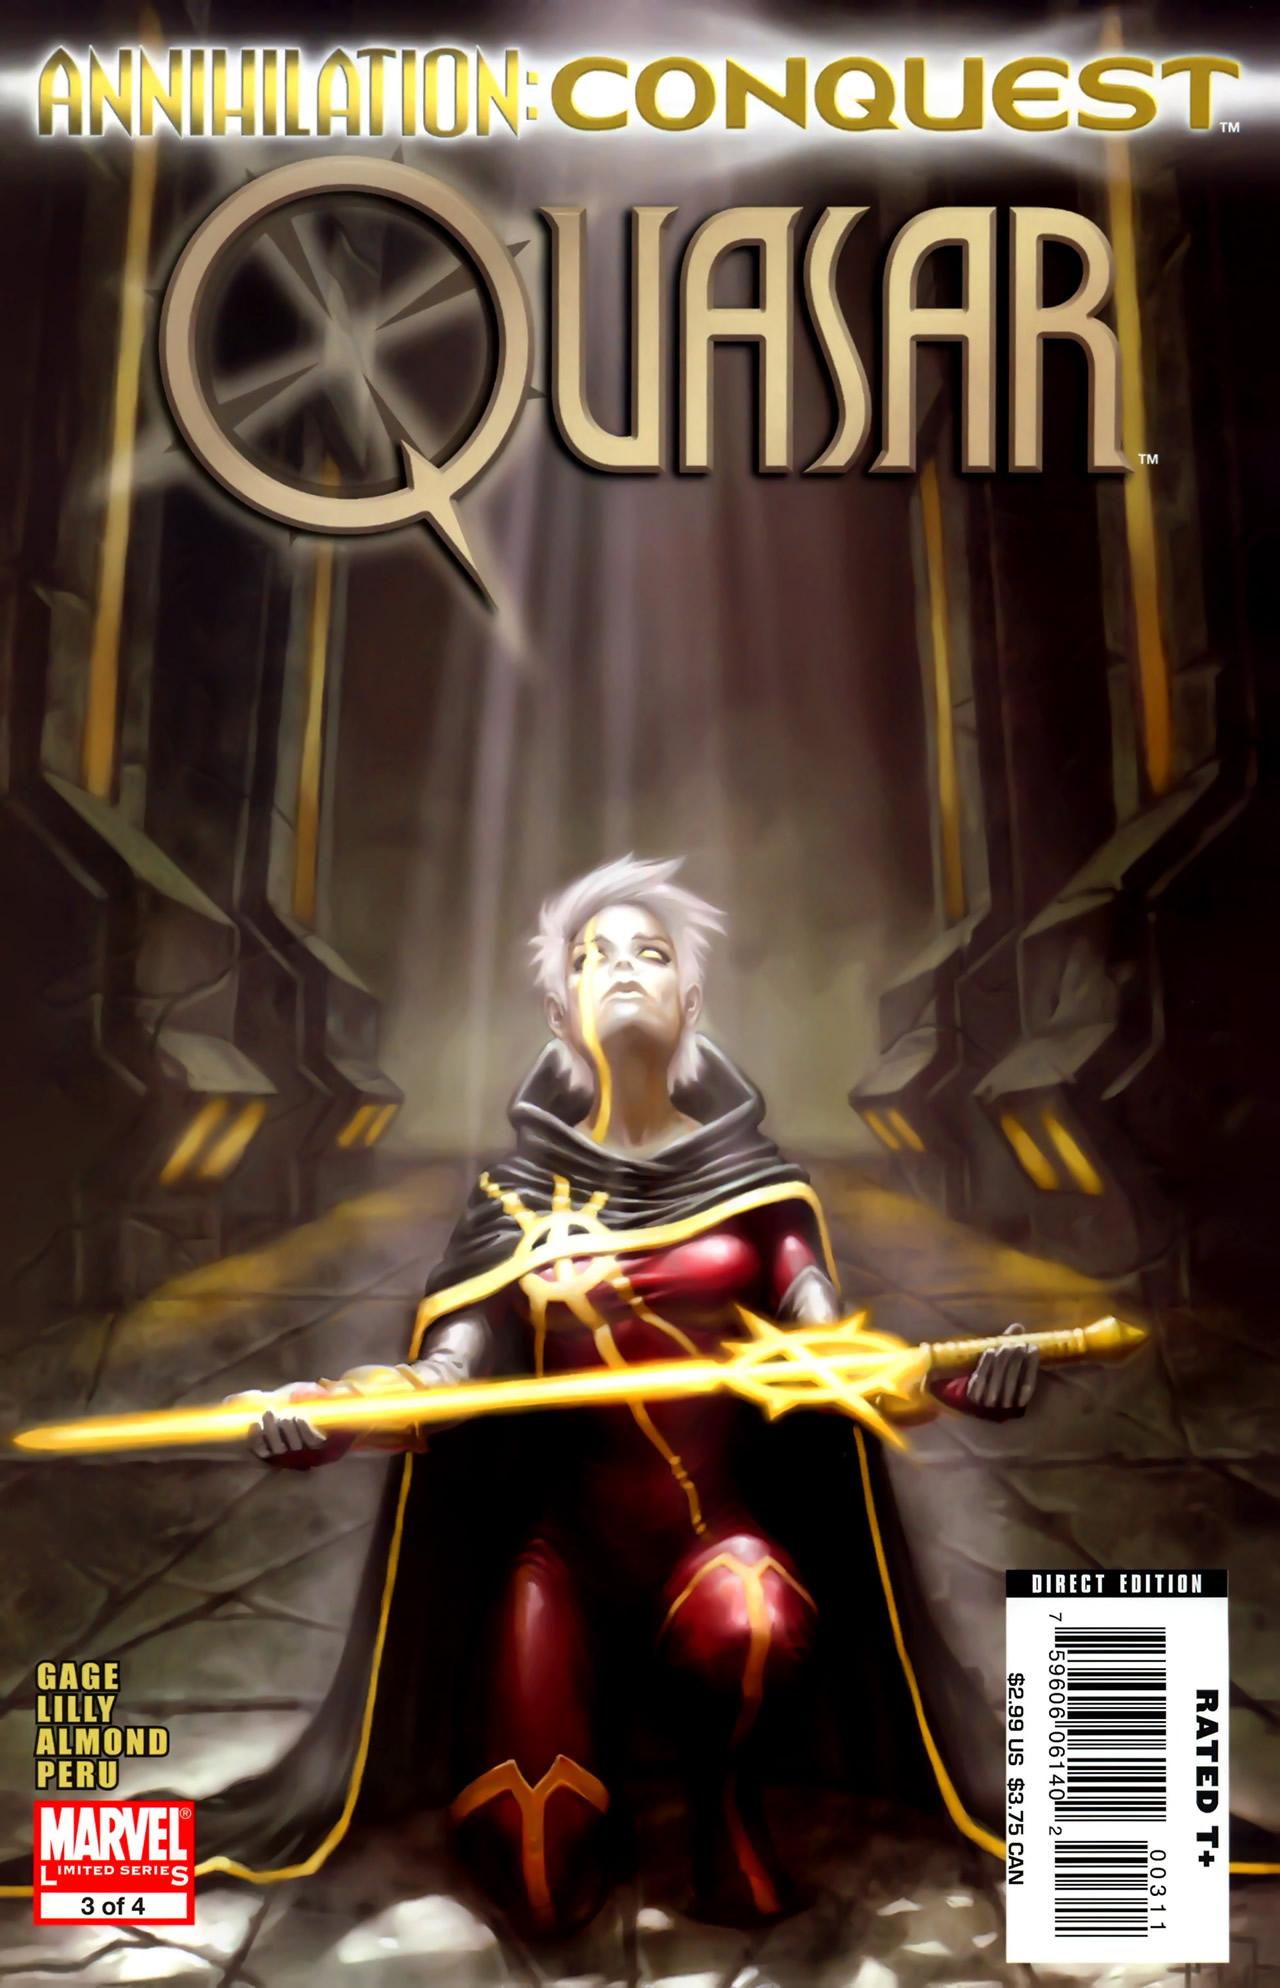 Annihilation: Conquest - Quasar Vol. 1 #3